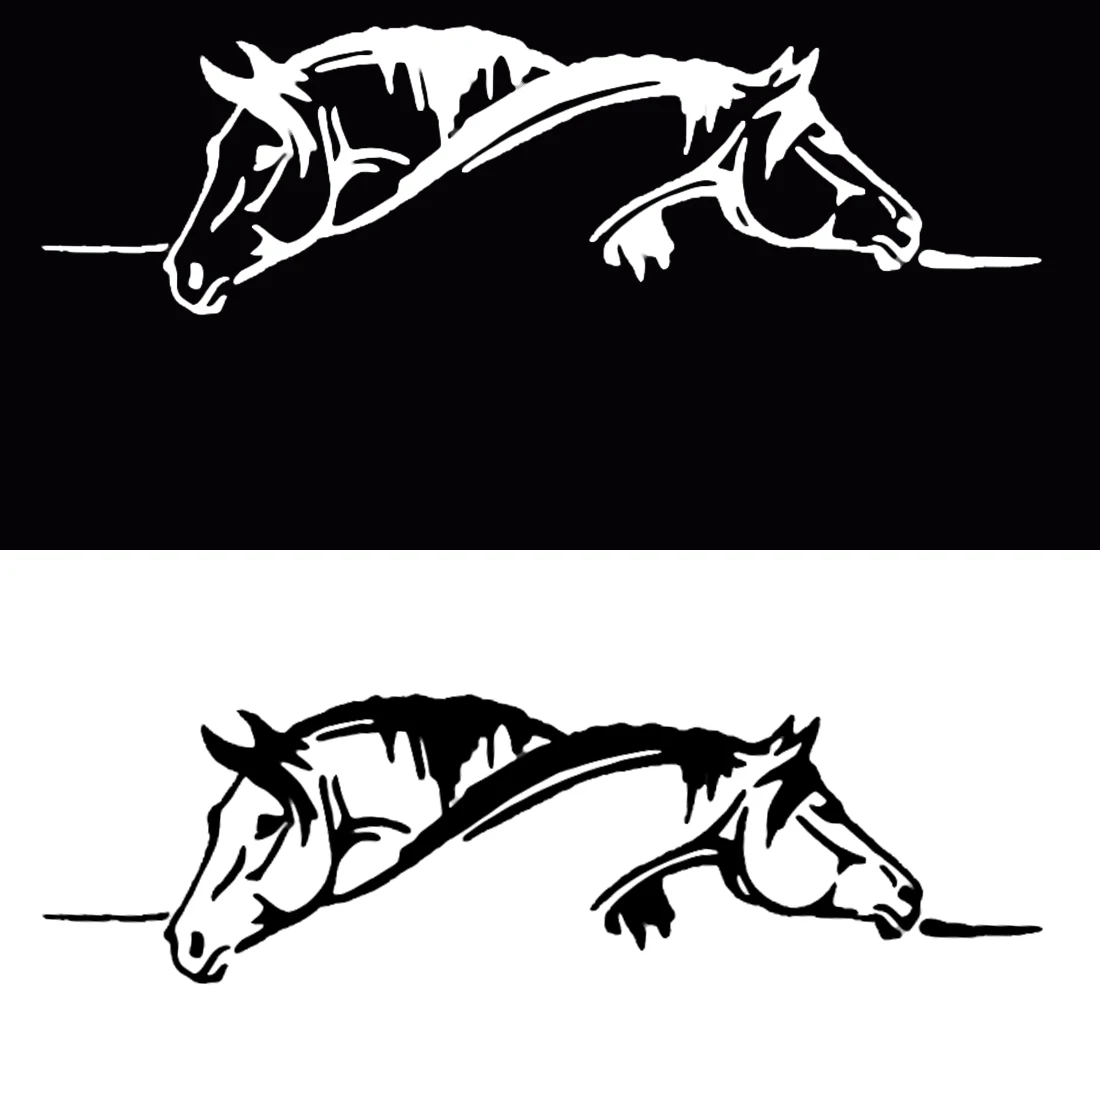 Dewtreetali креативная графическая Автомобильная наклейка и наклейка с изображением двух лошадей, смешное животное, автомобильный Стайлинг, черный/белый цвет, супер предложение, высокое качество